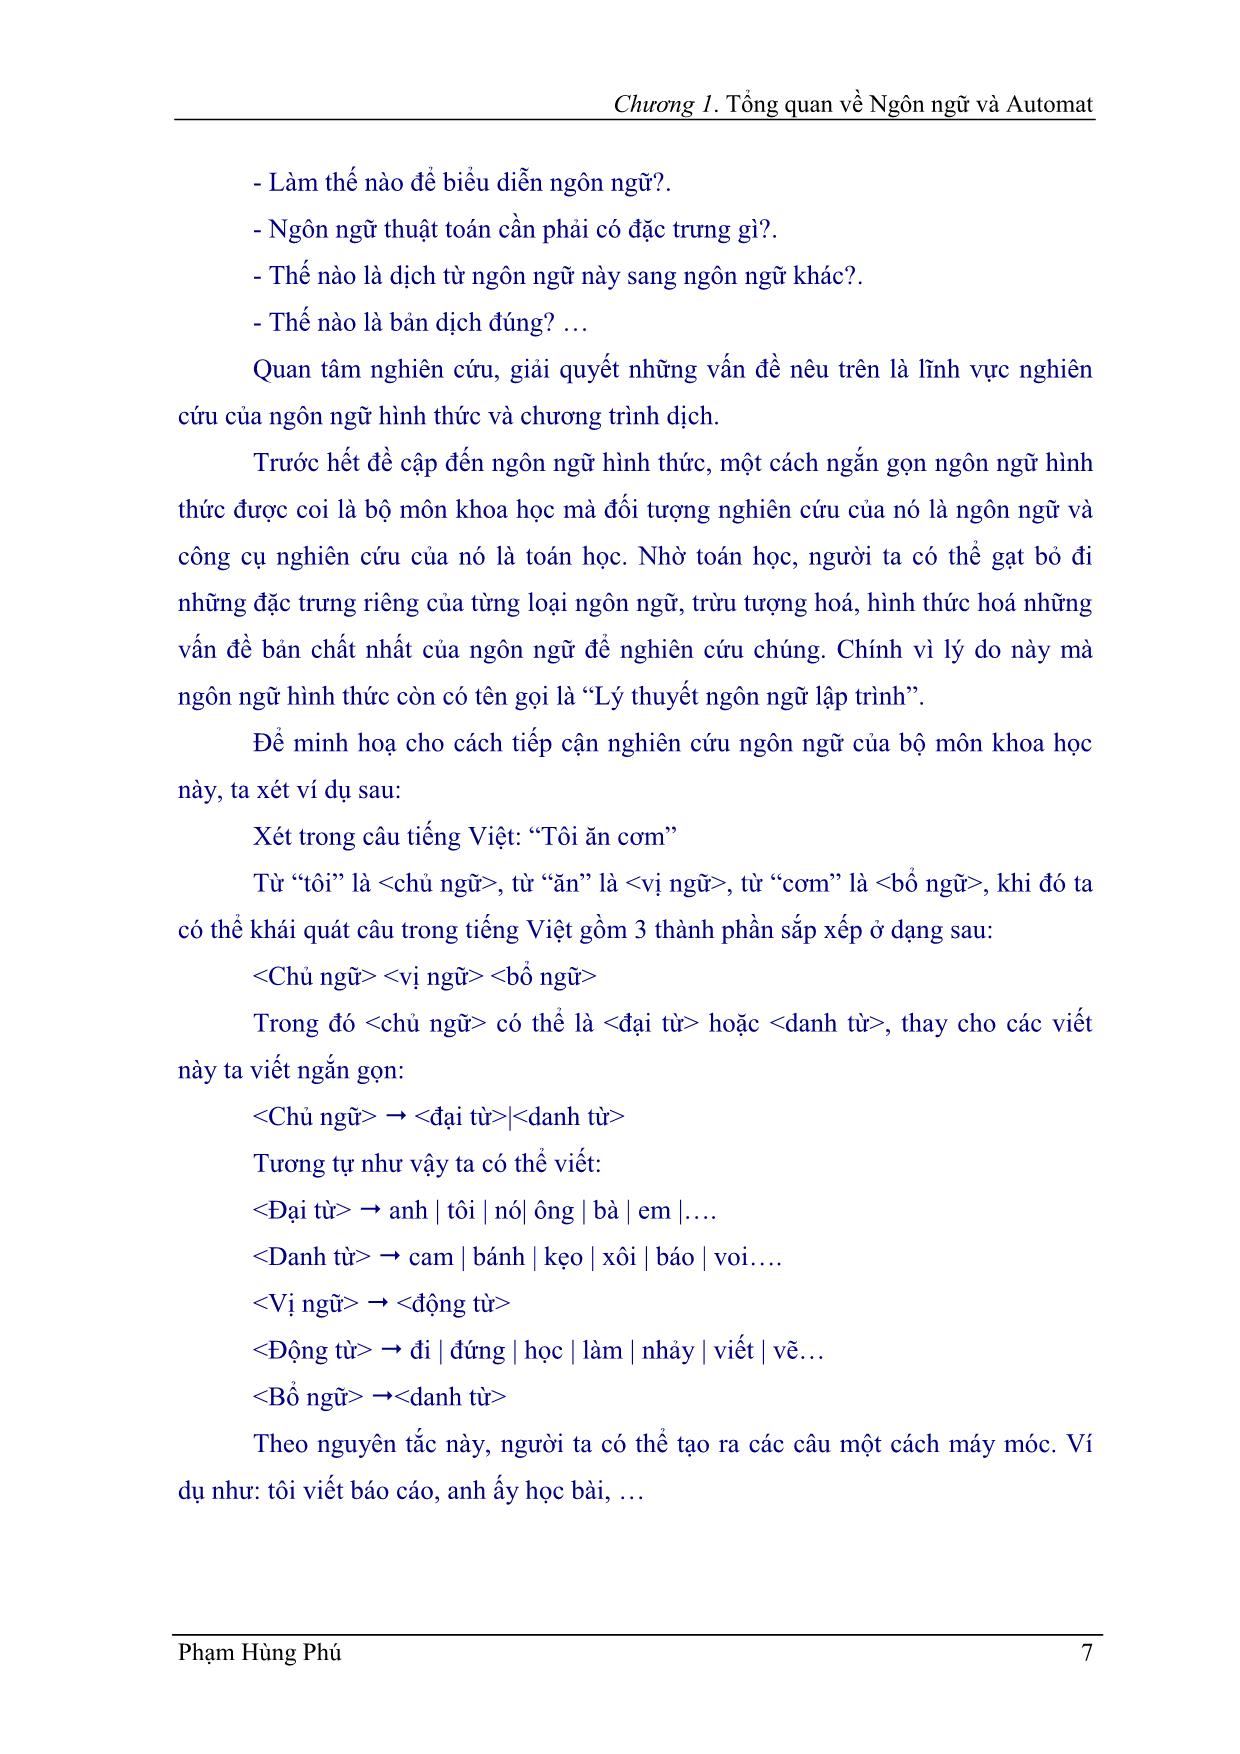 Giáo trình Ngôn ngữ hình thức trang 8